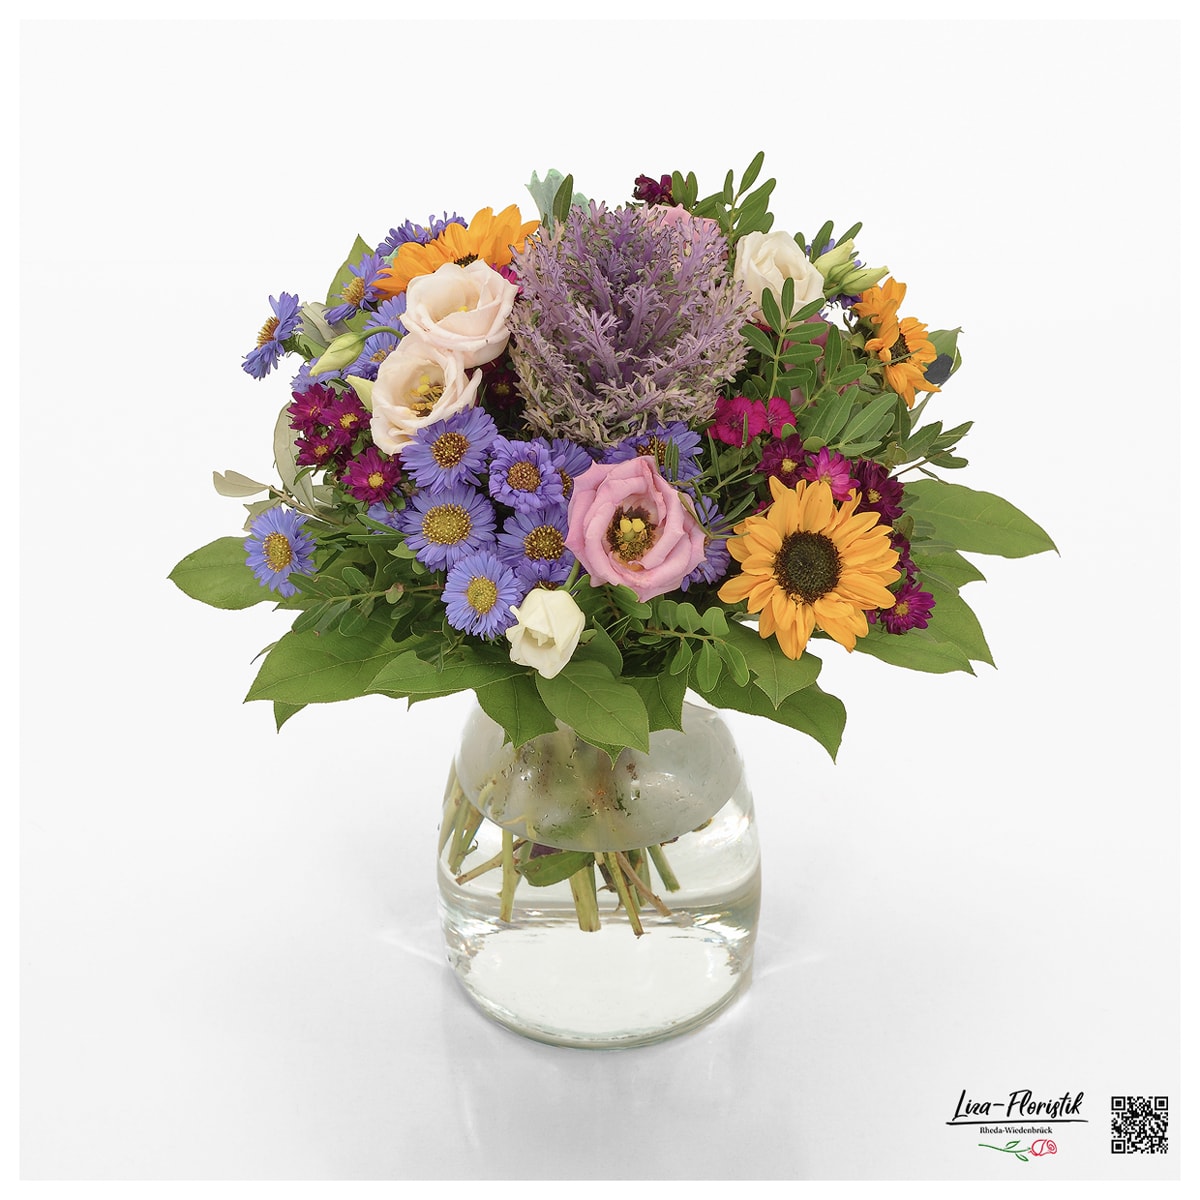 Blumenstrauß mit Zierkohl, Astern, Sonnenblumen und Lisianthus